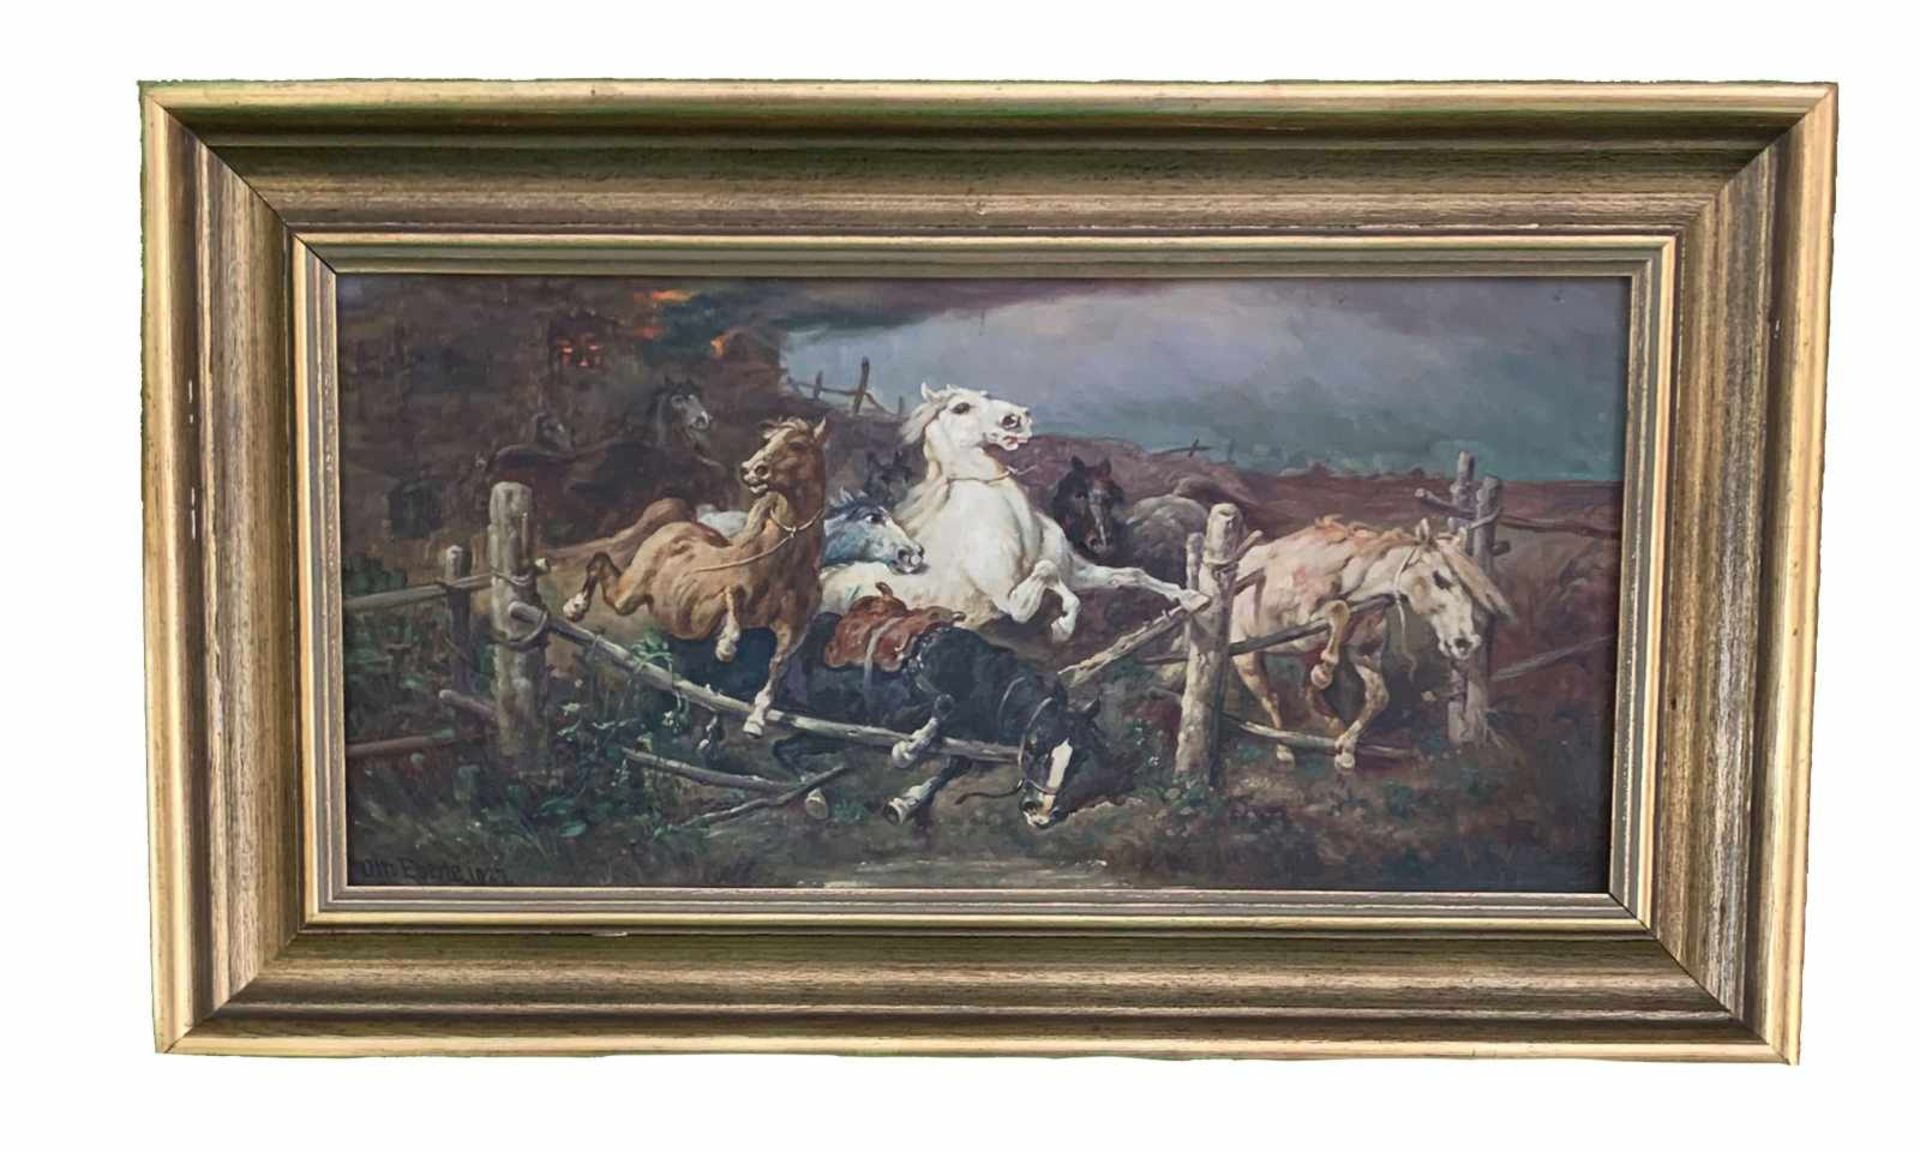 Otto Eberle. Pferde flüchten vor dem Brand. Öl/Lwd, signiert und datiert: "1927", 25,5 x 52 cm